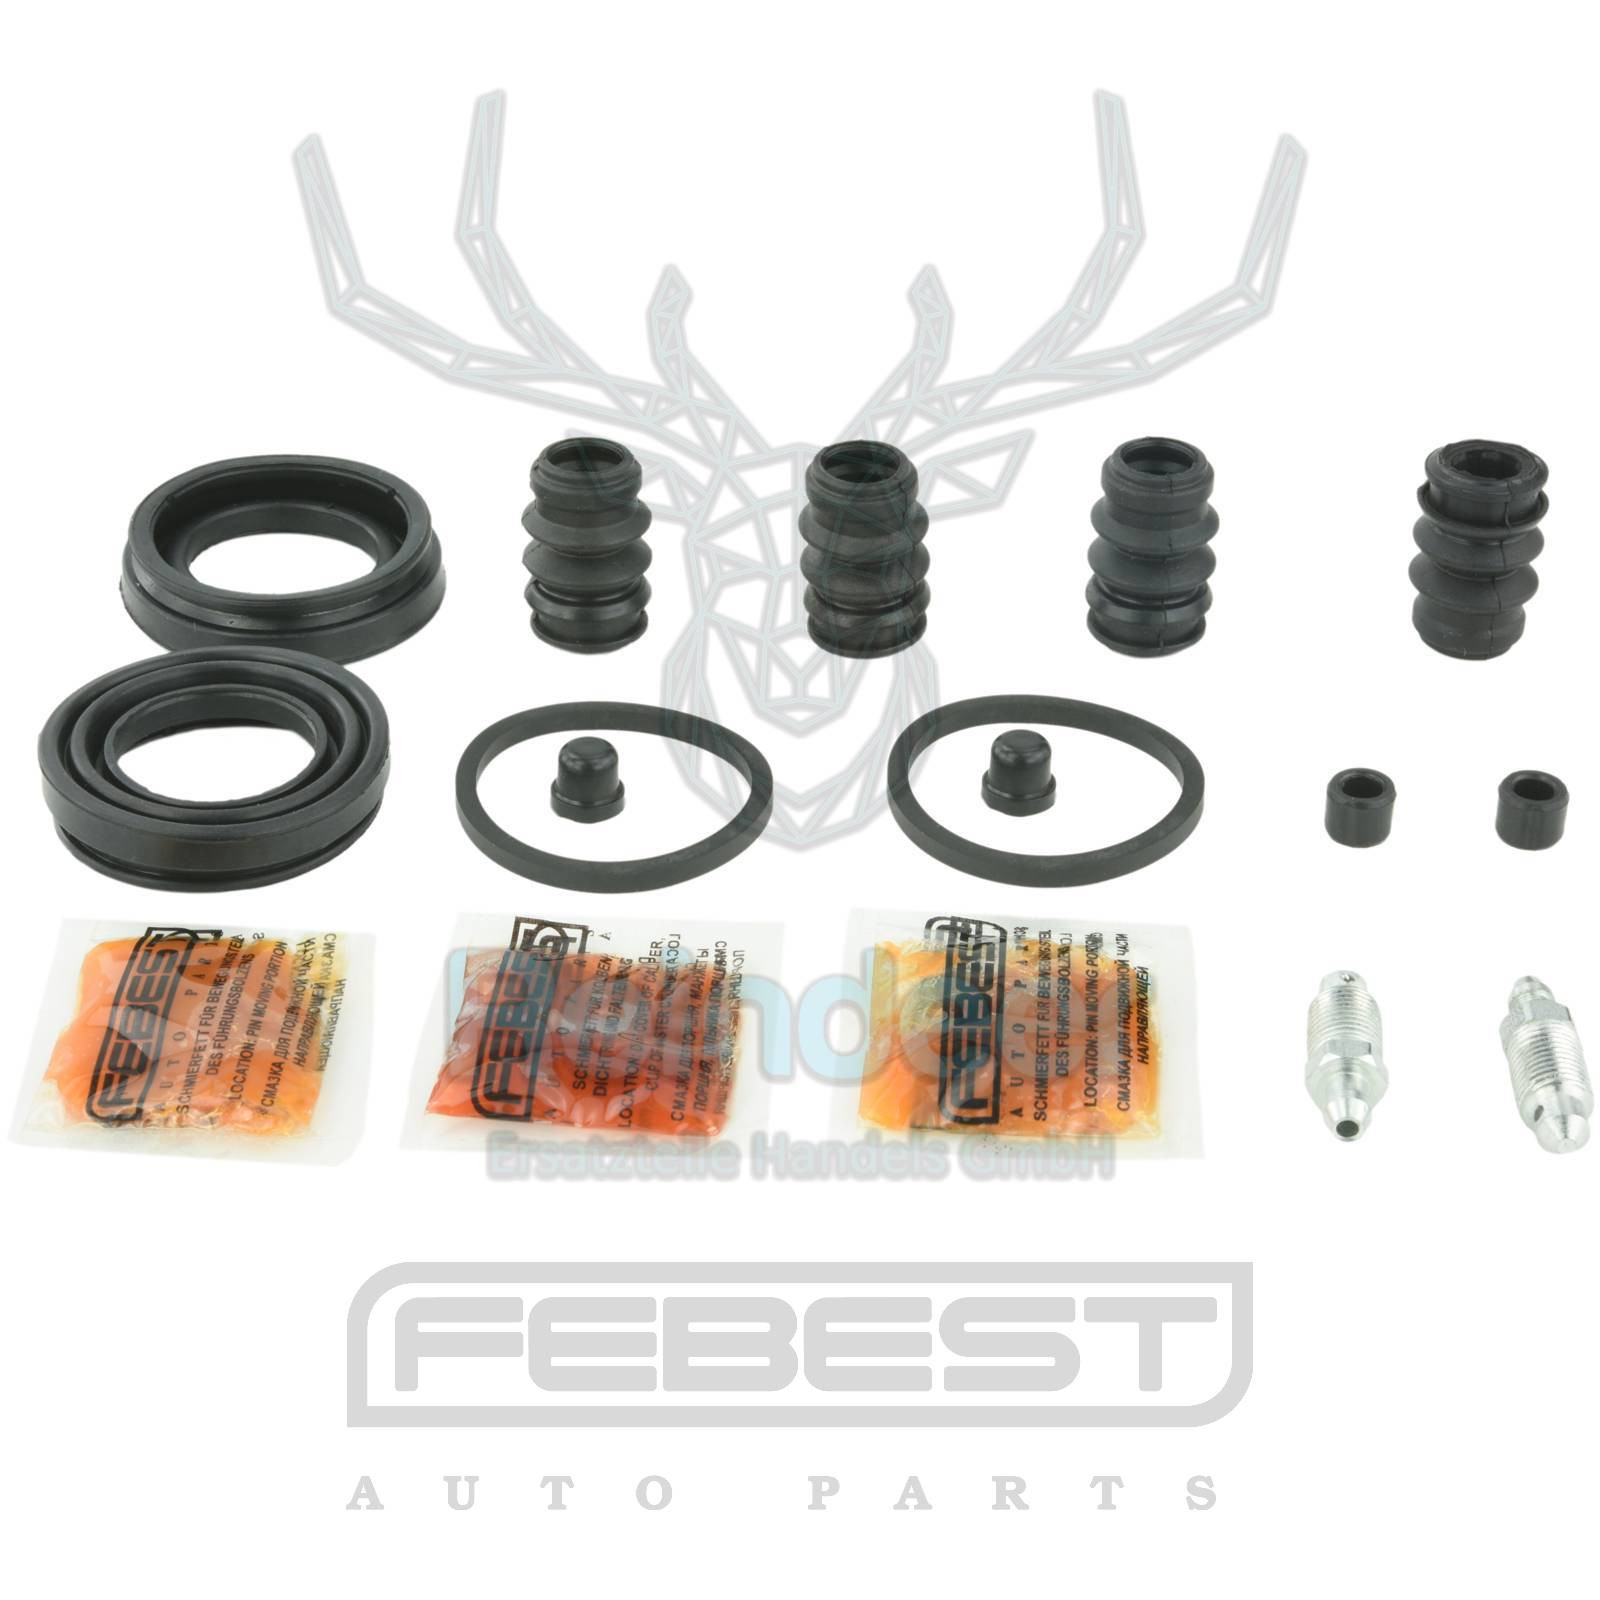 Rear brake caliper, repair kit 0575-cx5r For Mazda Cx-5 Ke 2011-2012 [Eu]